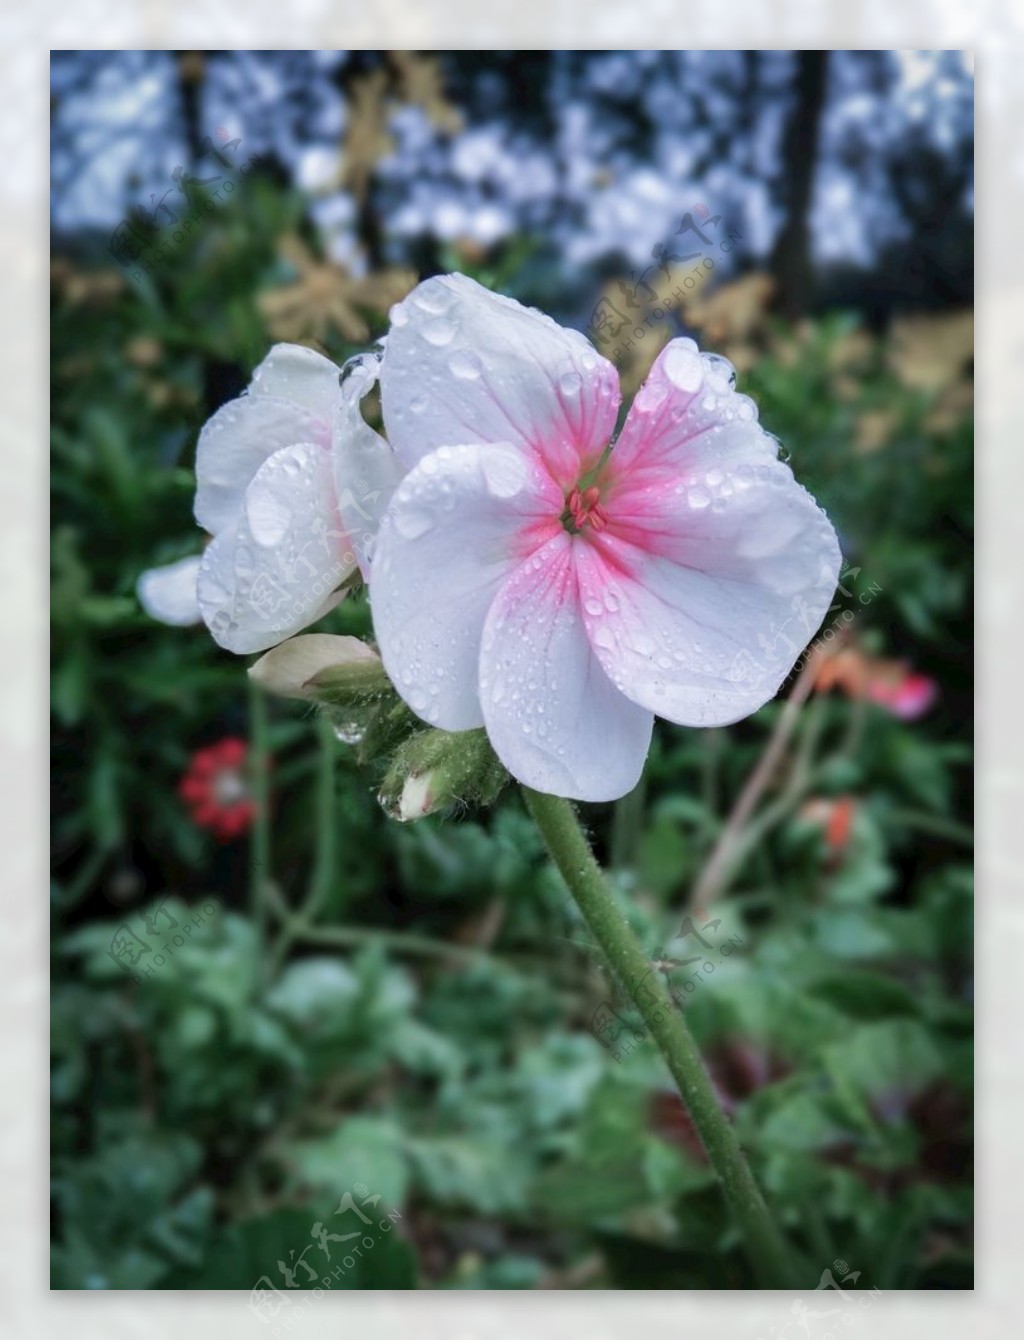 天竺葵粉色花朵水珠露珠